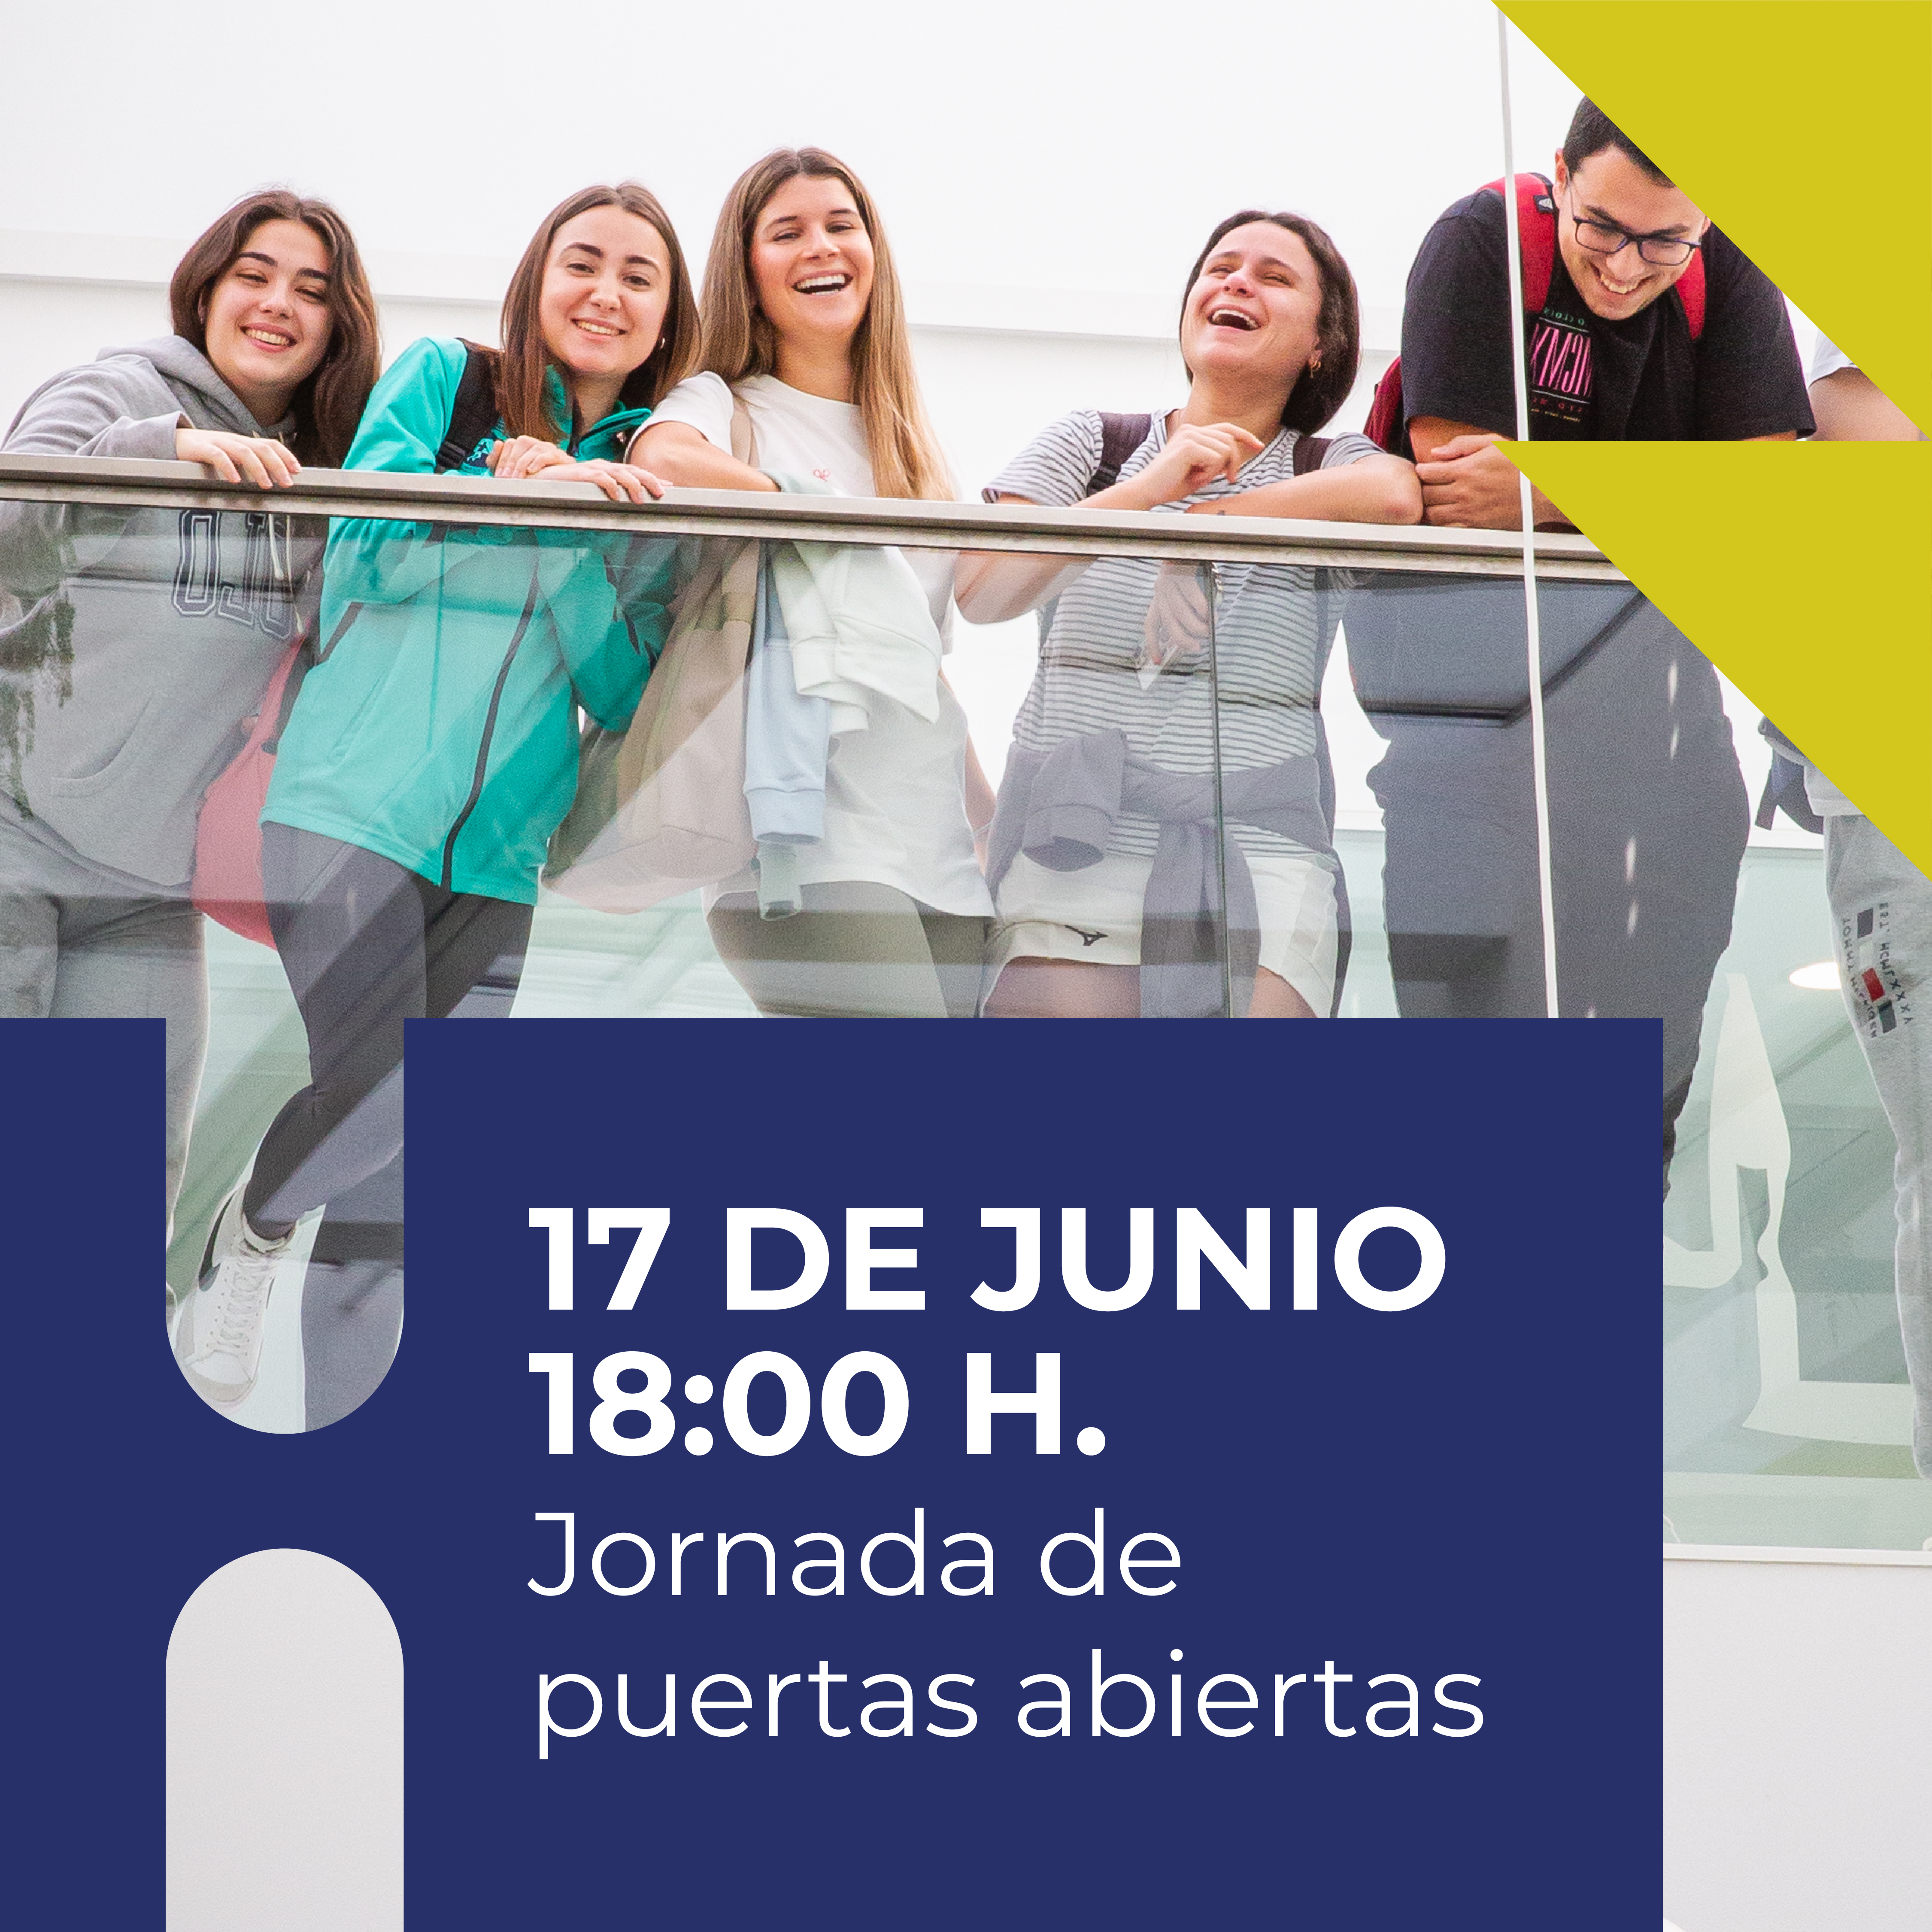 El Centro Universitario de Osuna celebrará unas Jornadas de Puertas Abiertas el 17 de junio